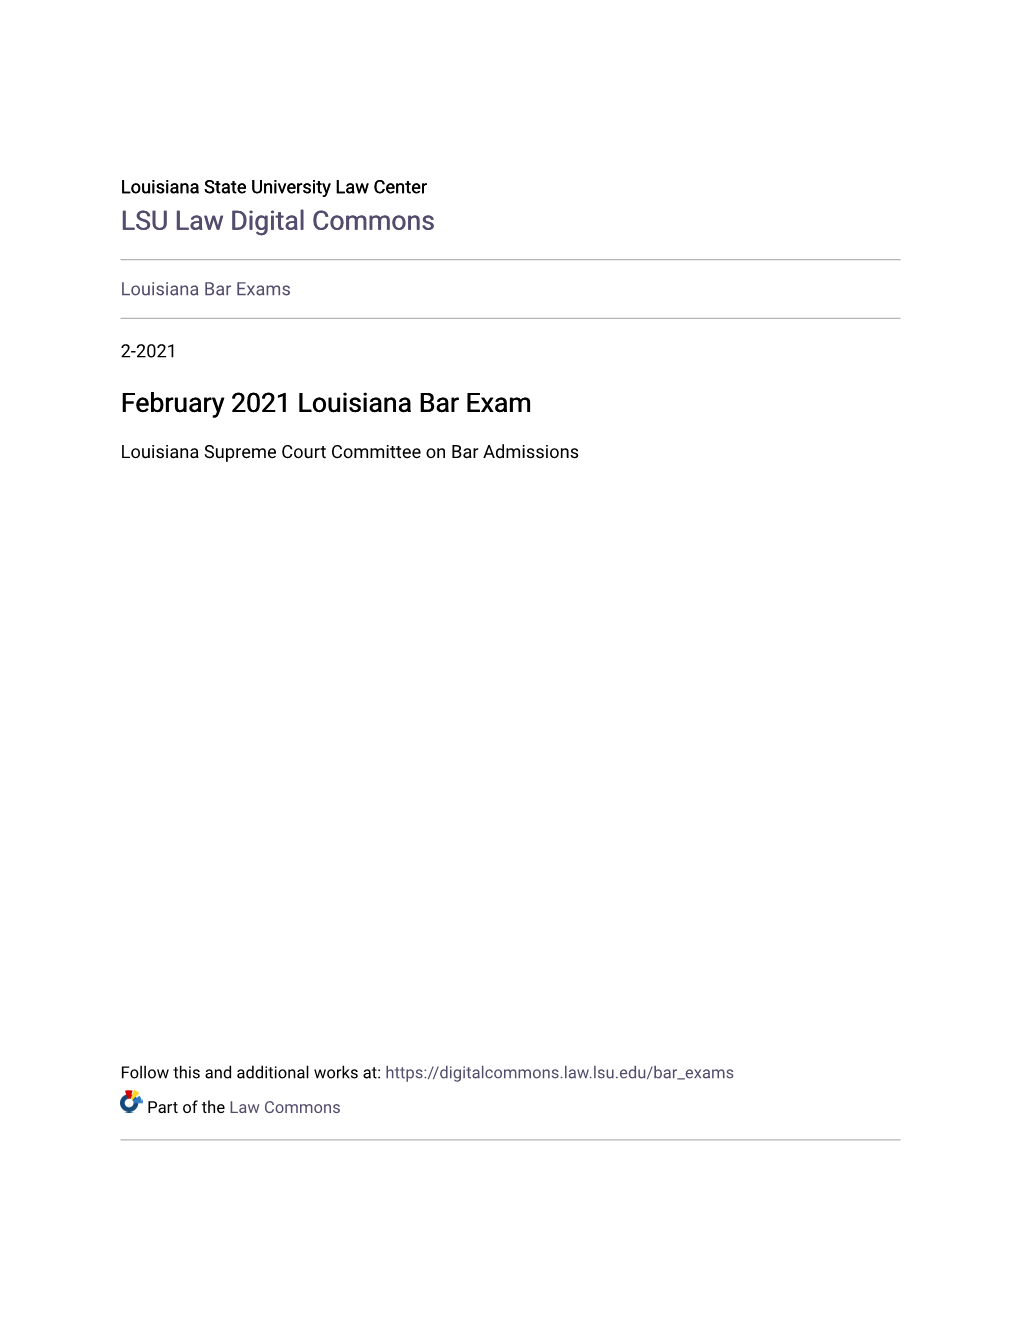 February 2021 Louisiana Bar Exam